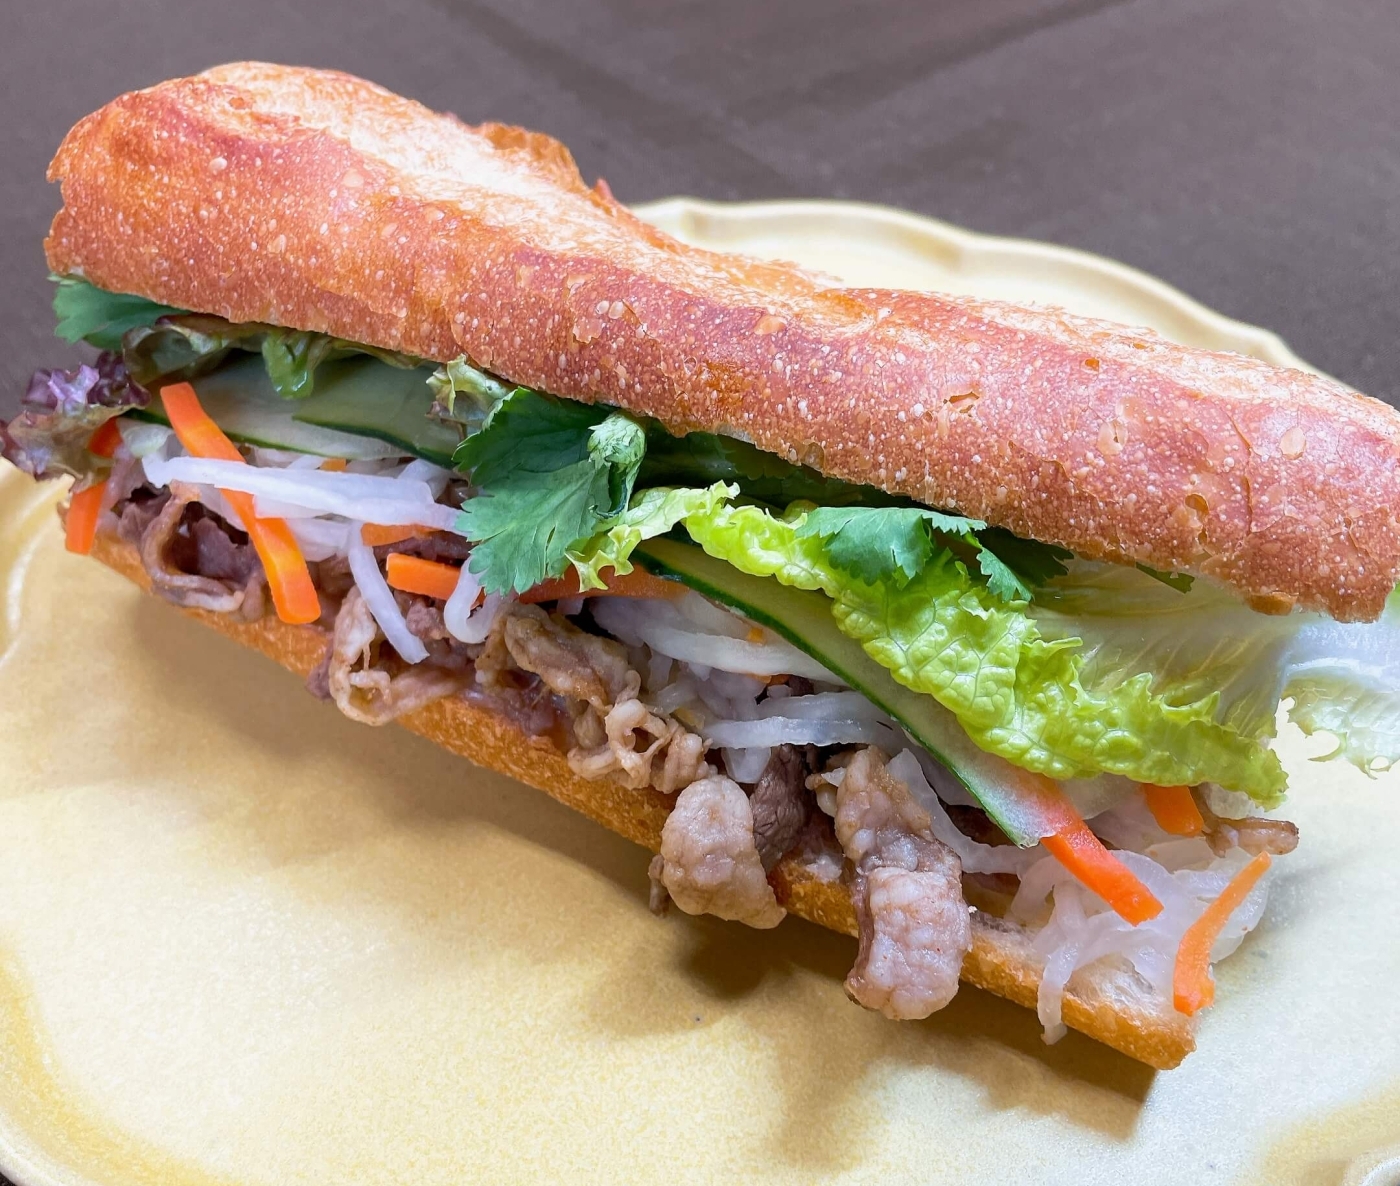 ベトナム風サンドイッチ【牛肉】の完成イメージ